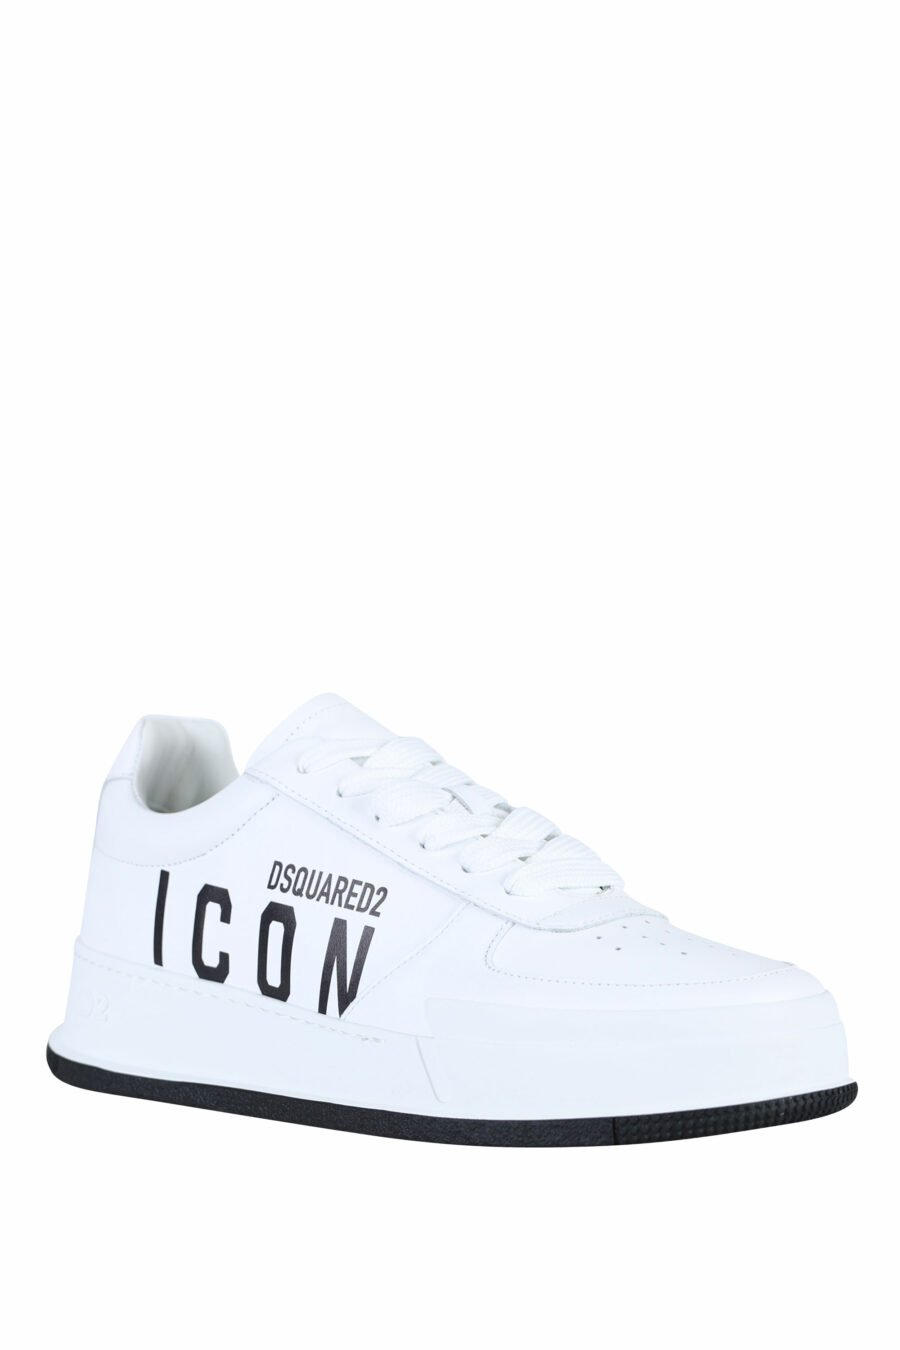 Zapatillas blancas con logo "icon" y suela negra - 8055777248850 1